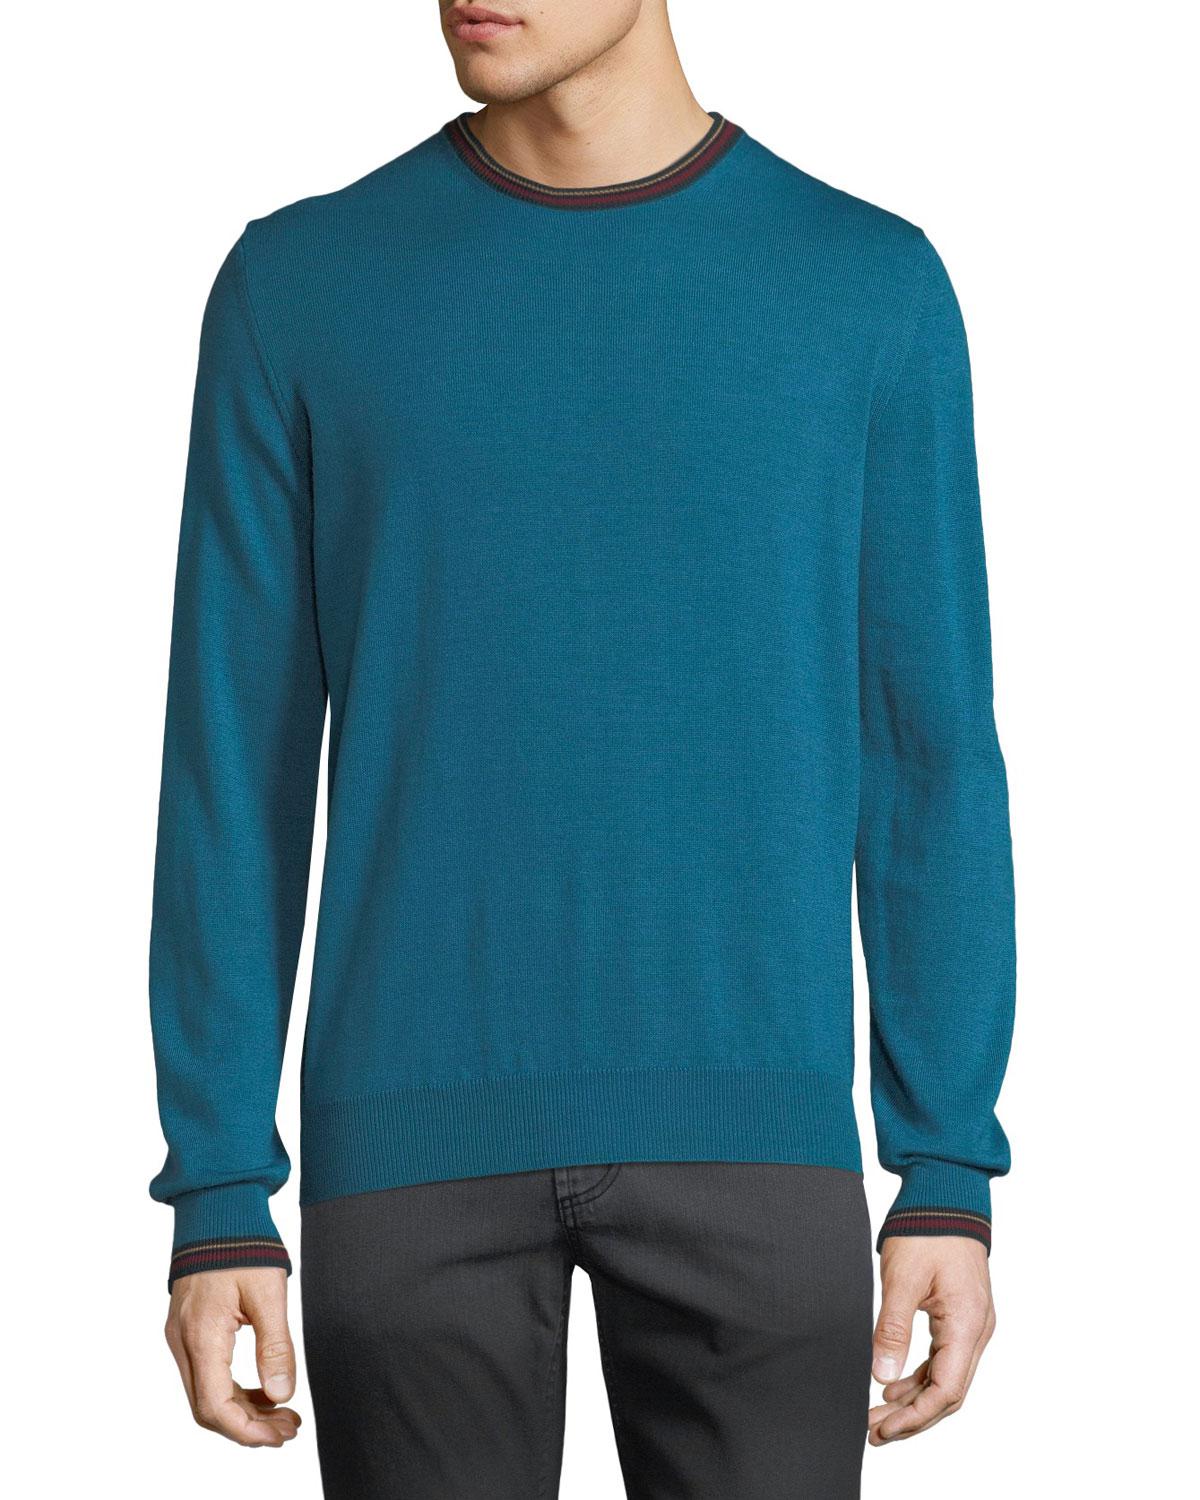 Lyst - Etro Men's Collegiate Crewneck Wool Sweater in Blue for Men